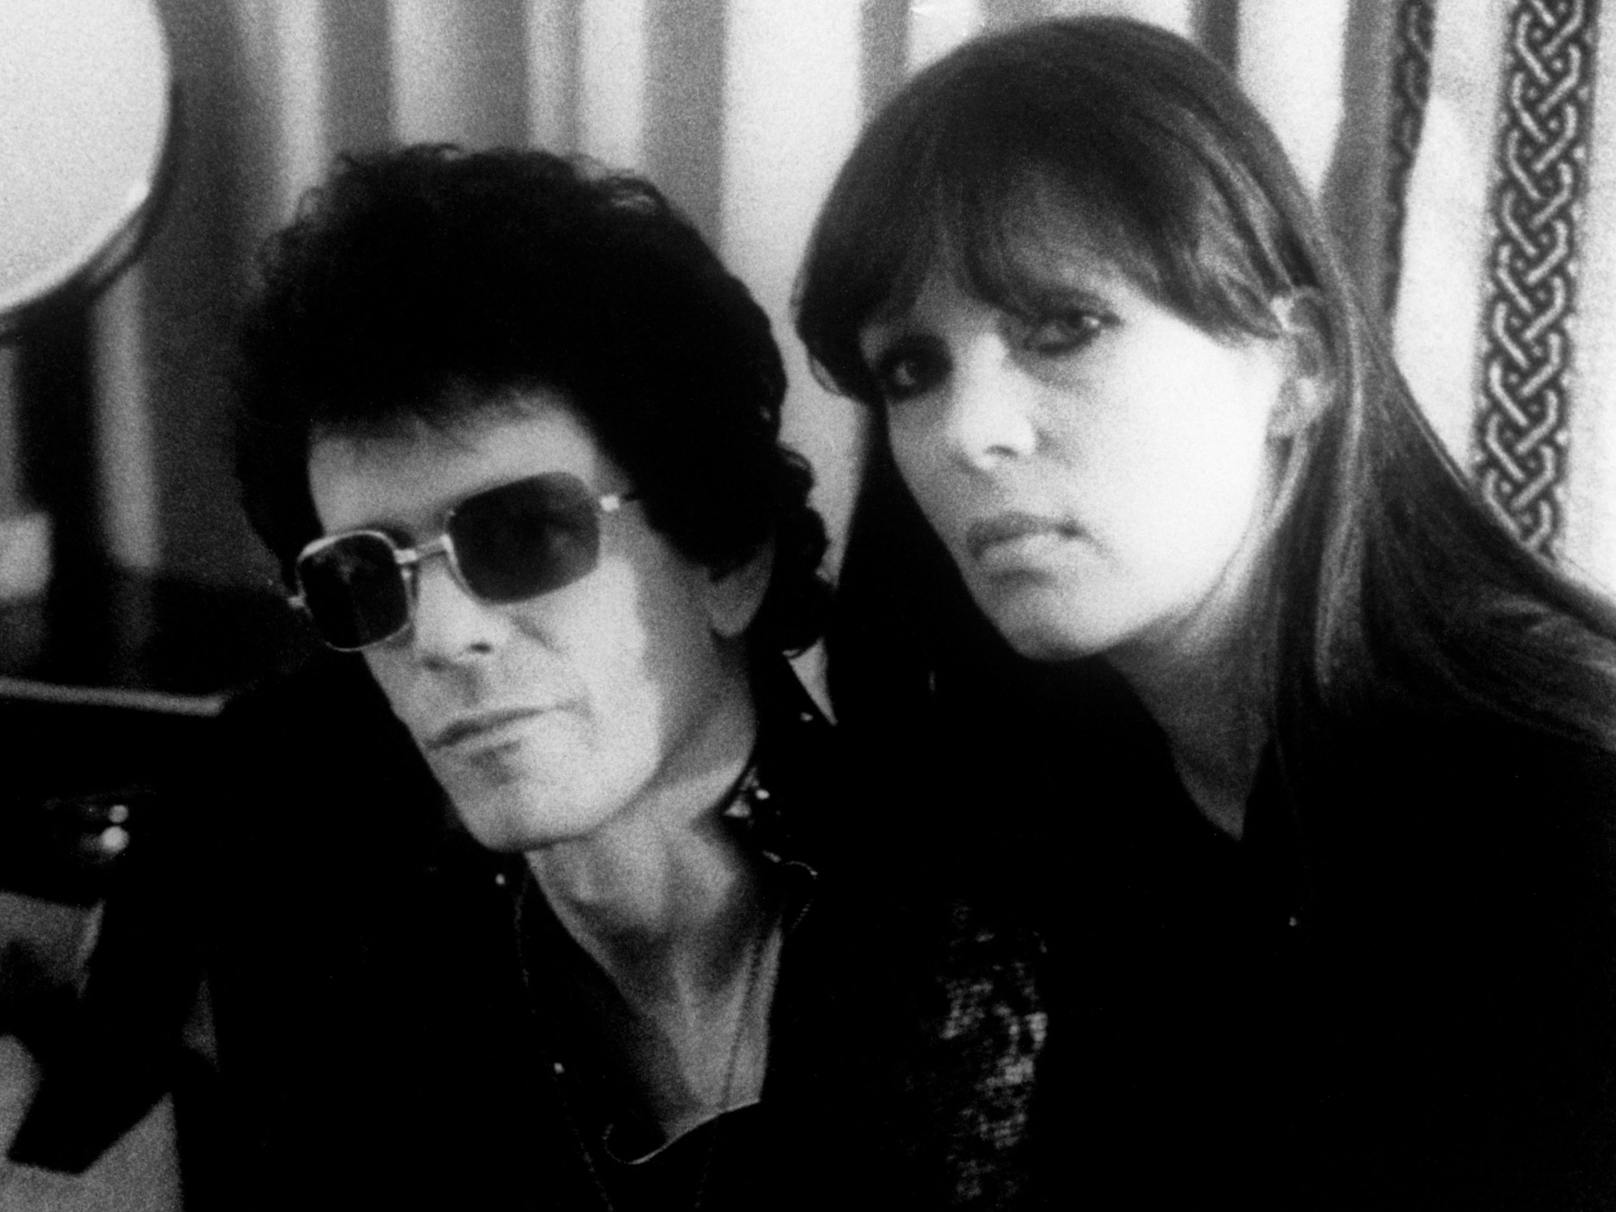 Sänger Lou Reed und <strong>Nico</strong> (links) von der experimentellen Rockband Velvet Underground